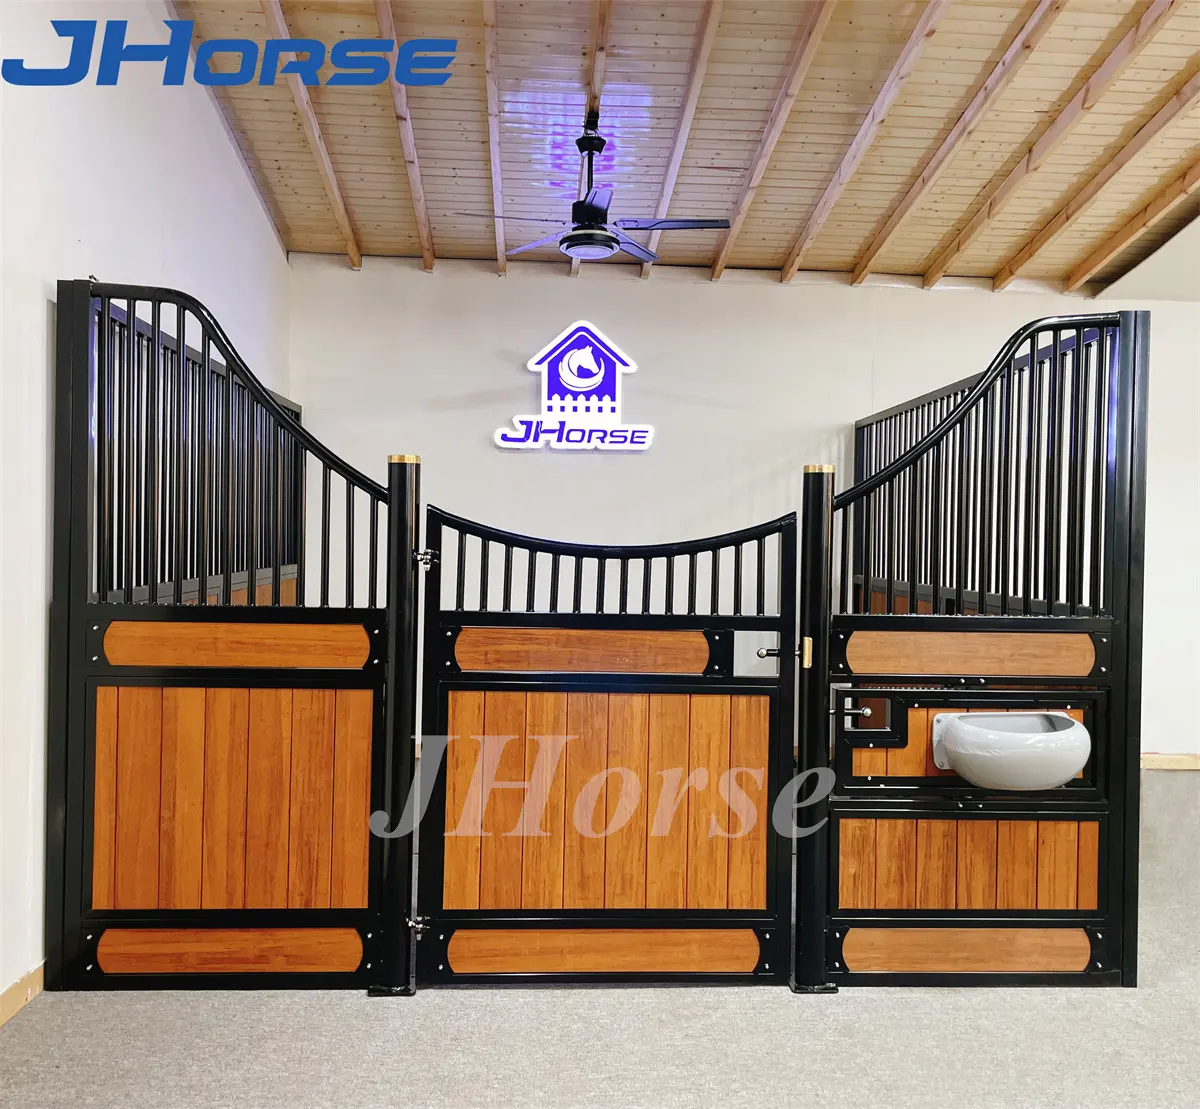 Prodotti all'ingrosso stabili stalle per attrezzature per cavalli stalle per cavalli solide con verniciatura a polvere non tossica